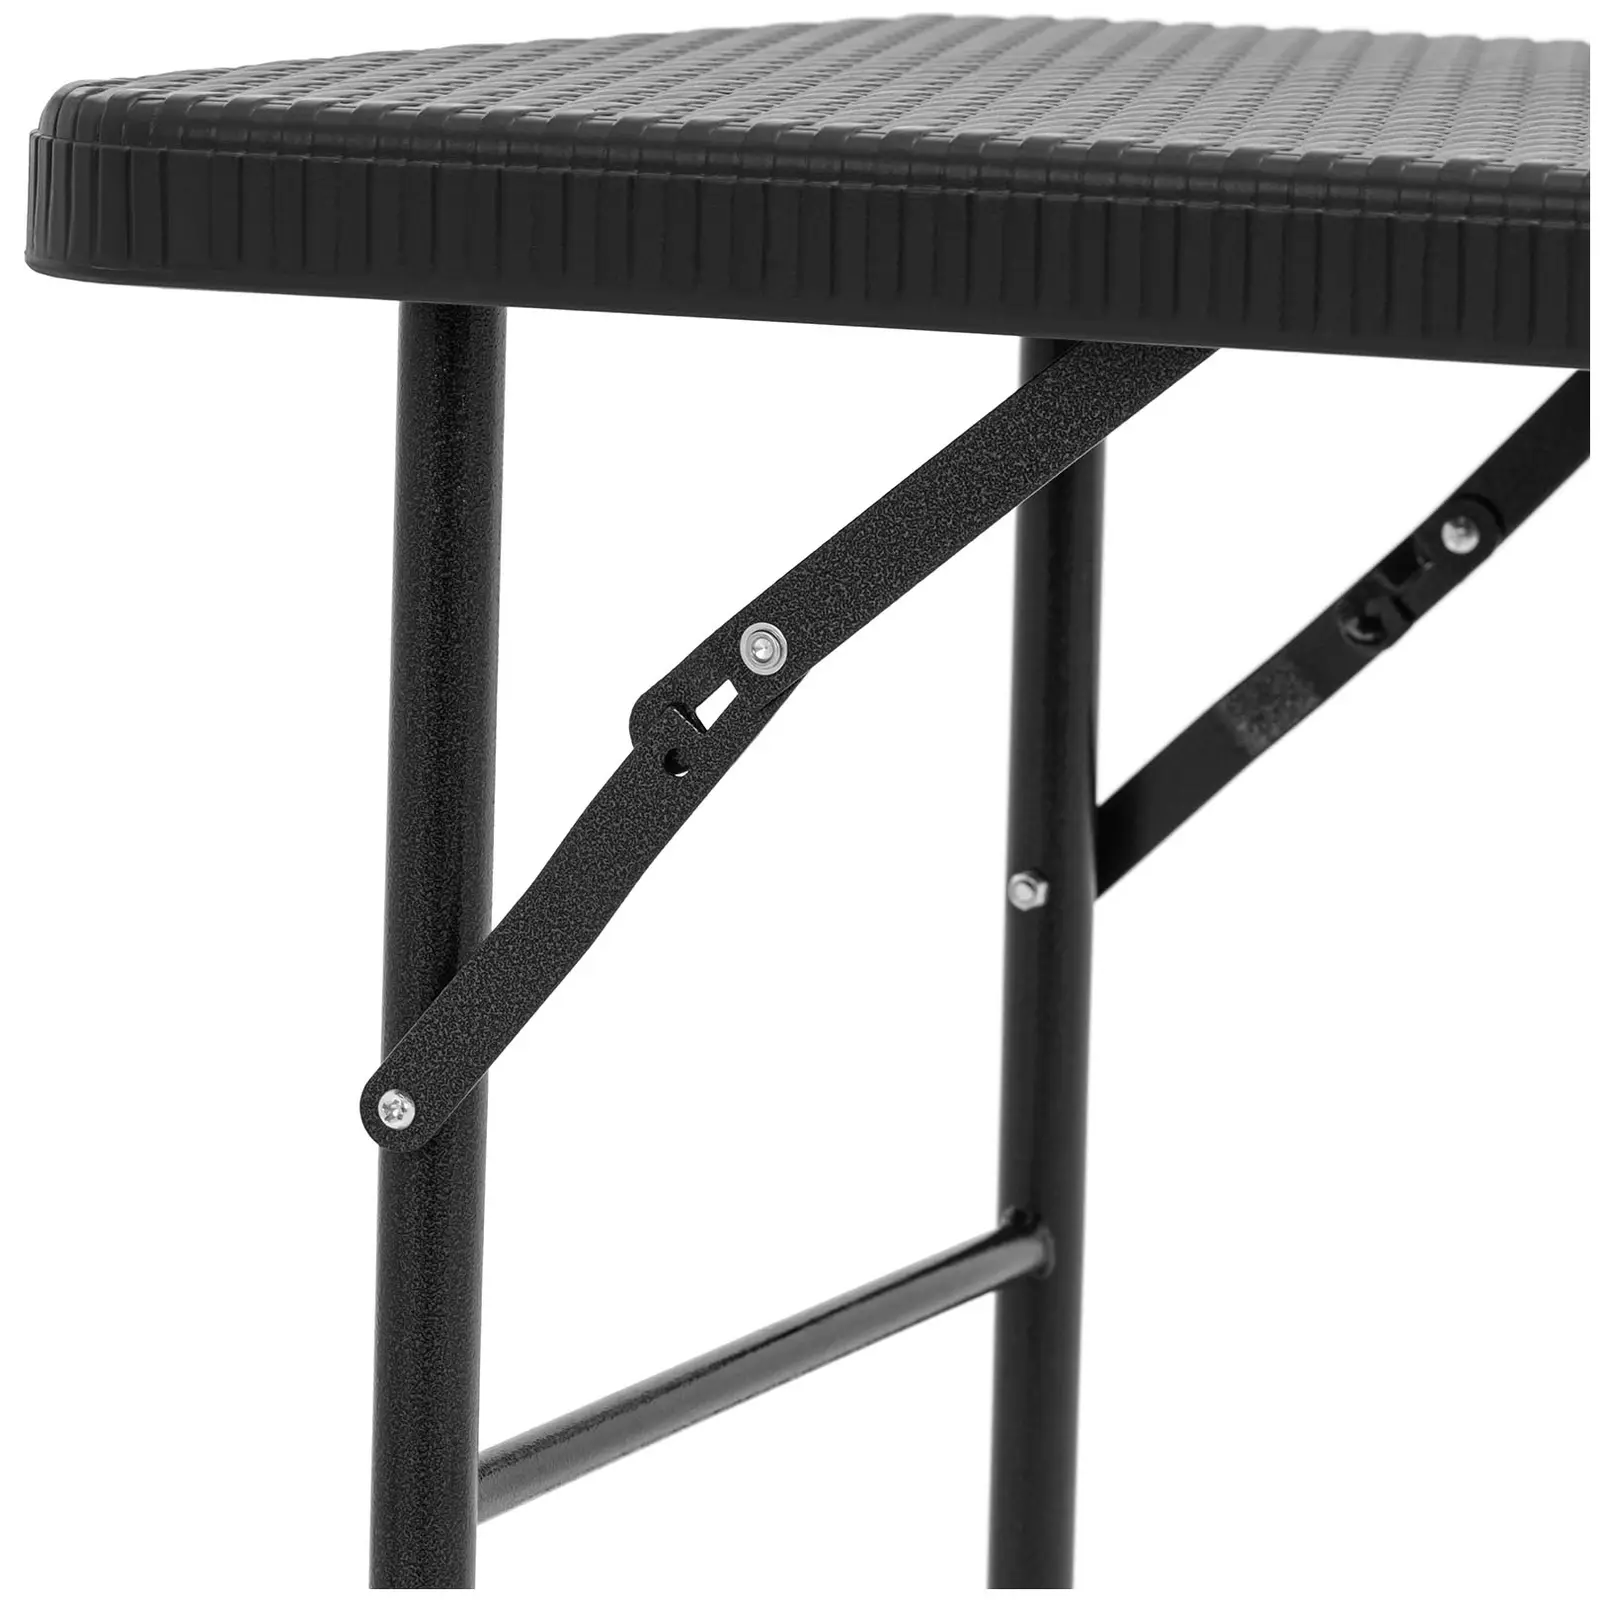 Stół składany - 121,60 x 61,50 x 73,50 cm - wewnętrzny/zewnętrzny - czarny